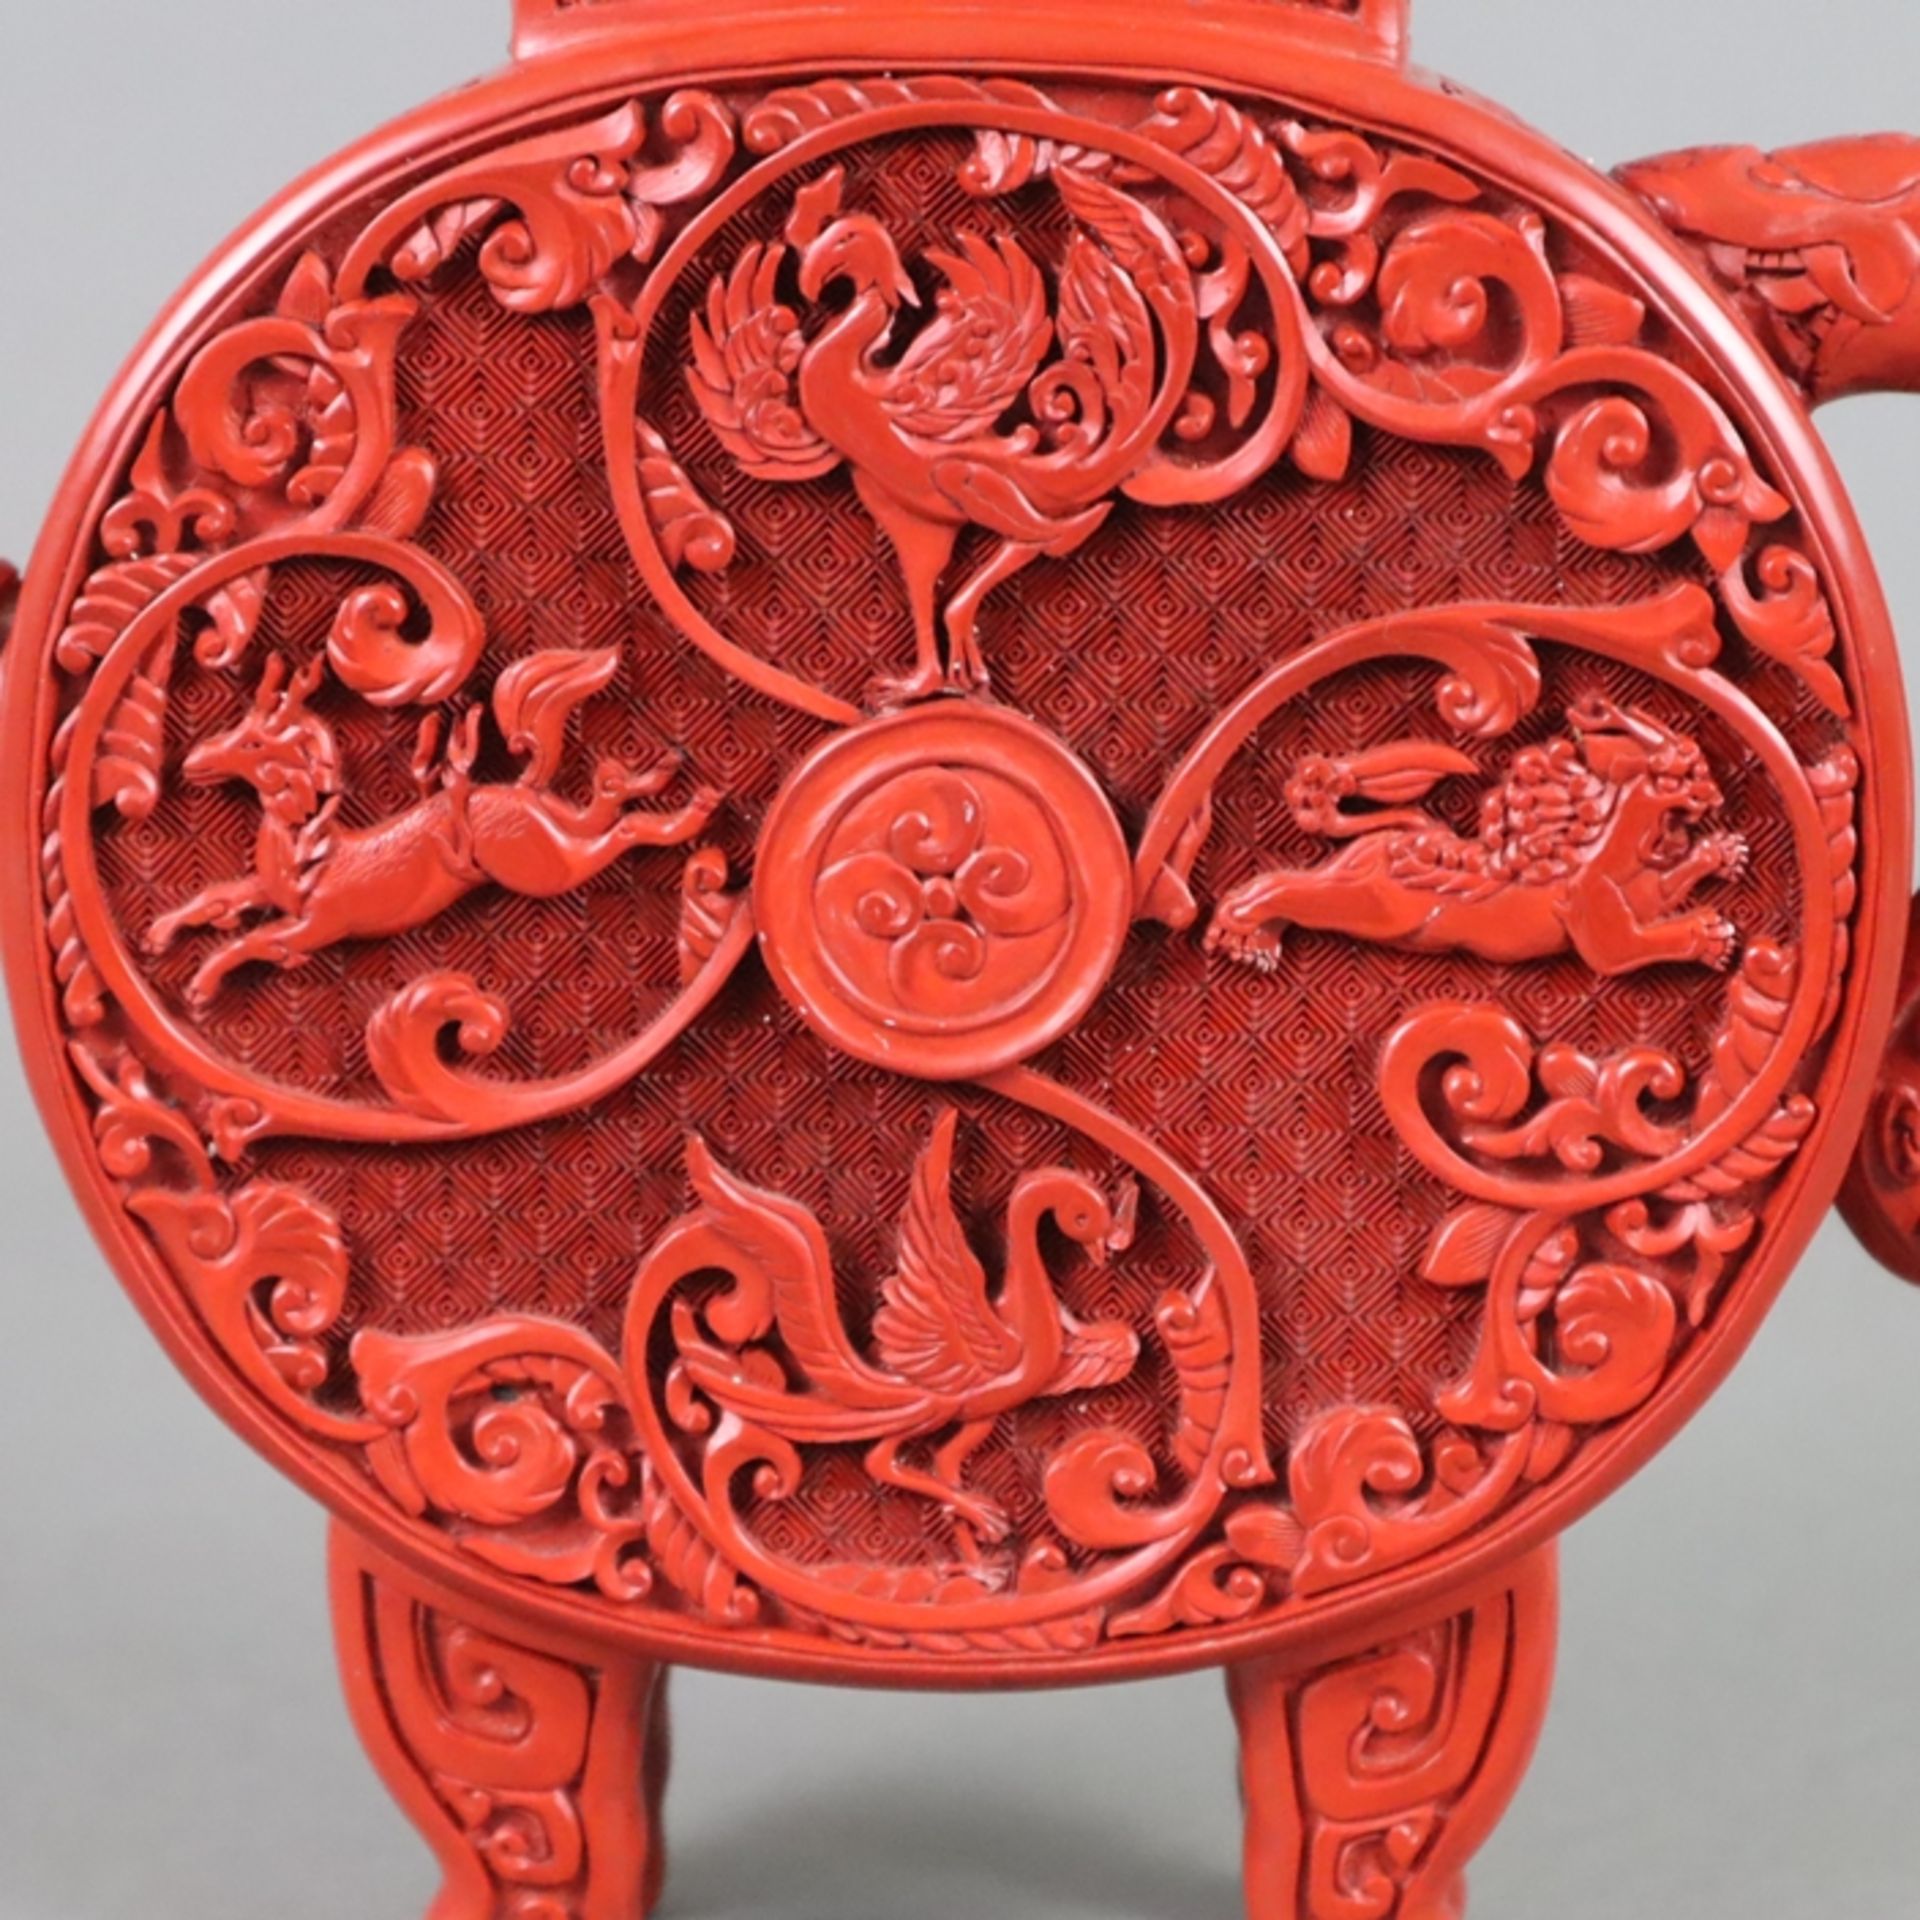 Schnitzlack-Teekanne - China, ausgehende Qing-Dynastie, nach 1900, Außenwandung mit rotem Schnitzla - Image 6 of 12